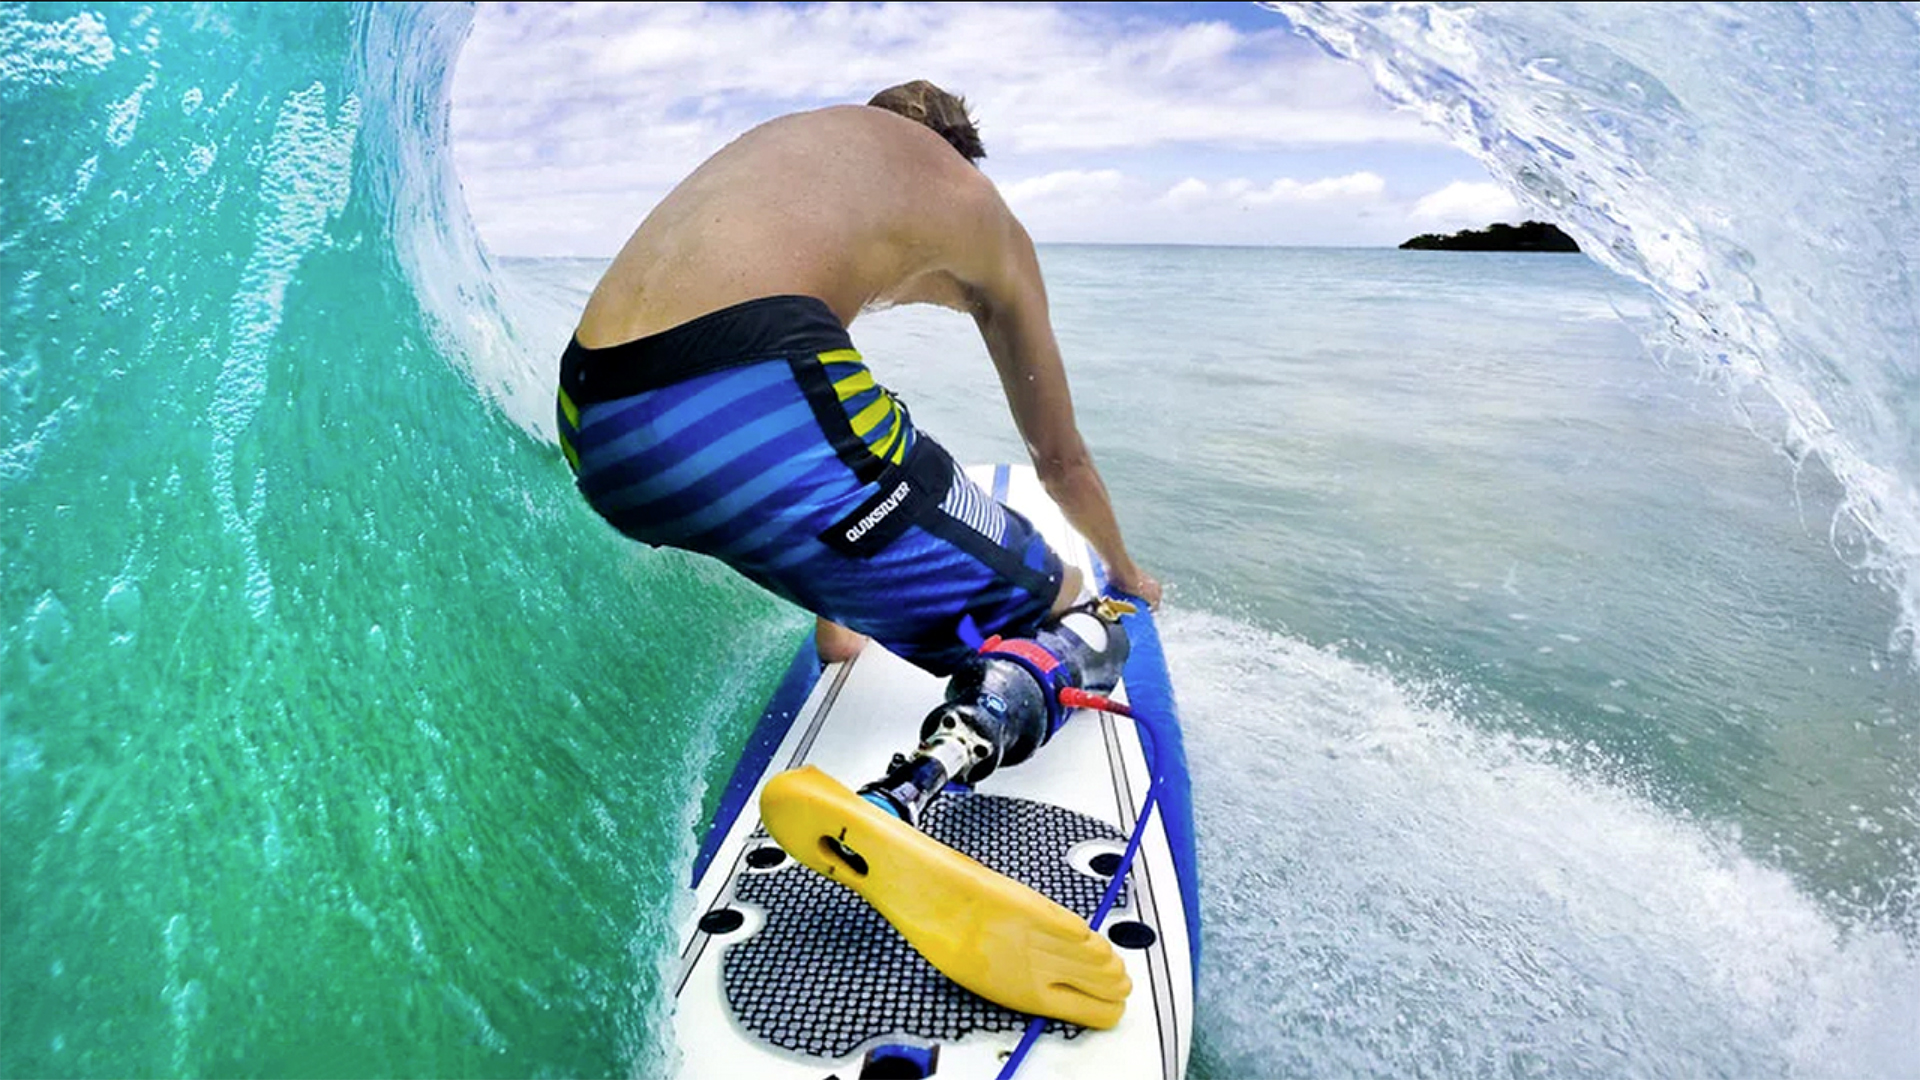 Mike Coots, miembro del Consejo Asesor del Surf Adaptado de la ISA y embajador del deporte, se entuba en una ola. Foto: Mike Coots